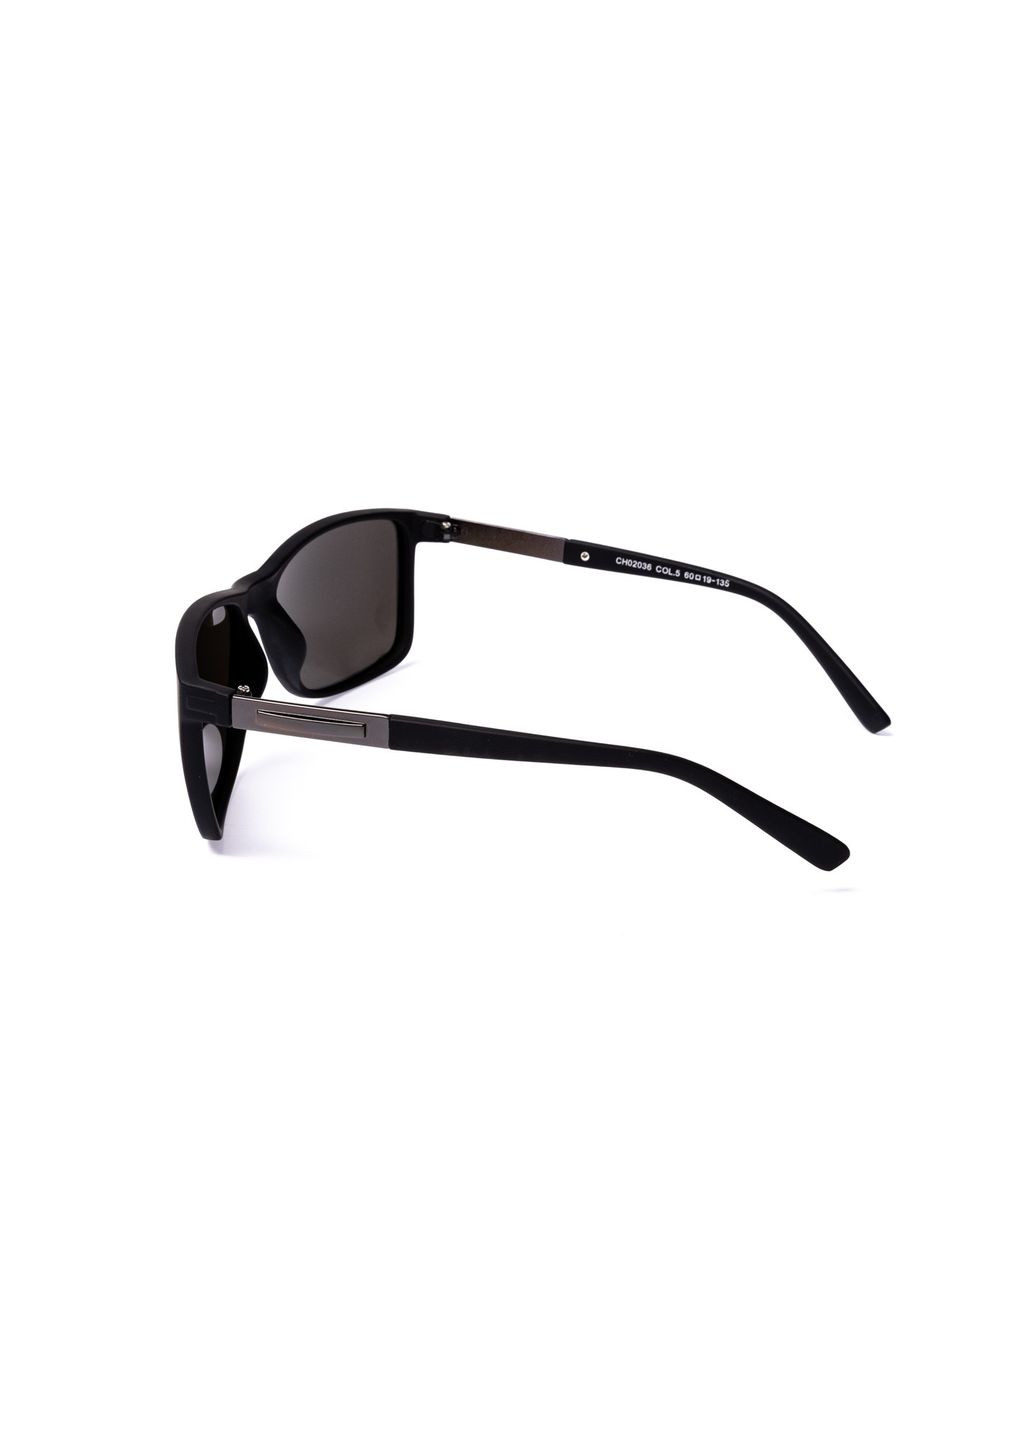 Солнцезащитные очки с поляризацией Классика мужские 383-289 LuckyLOOK 383-289m (289360760)